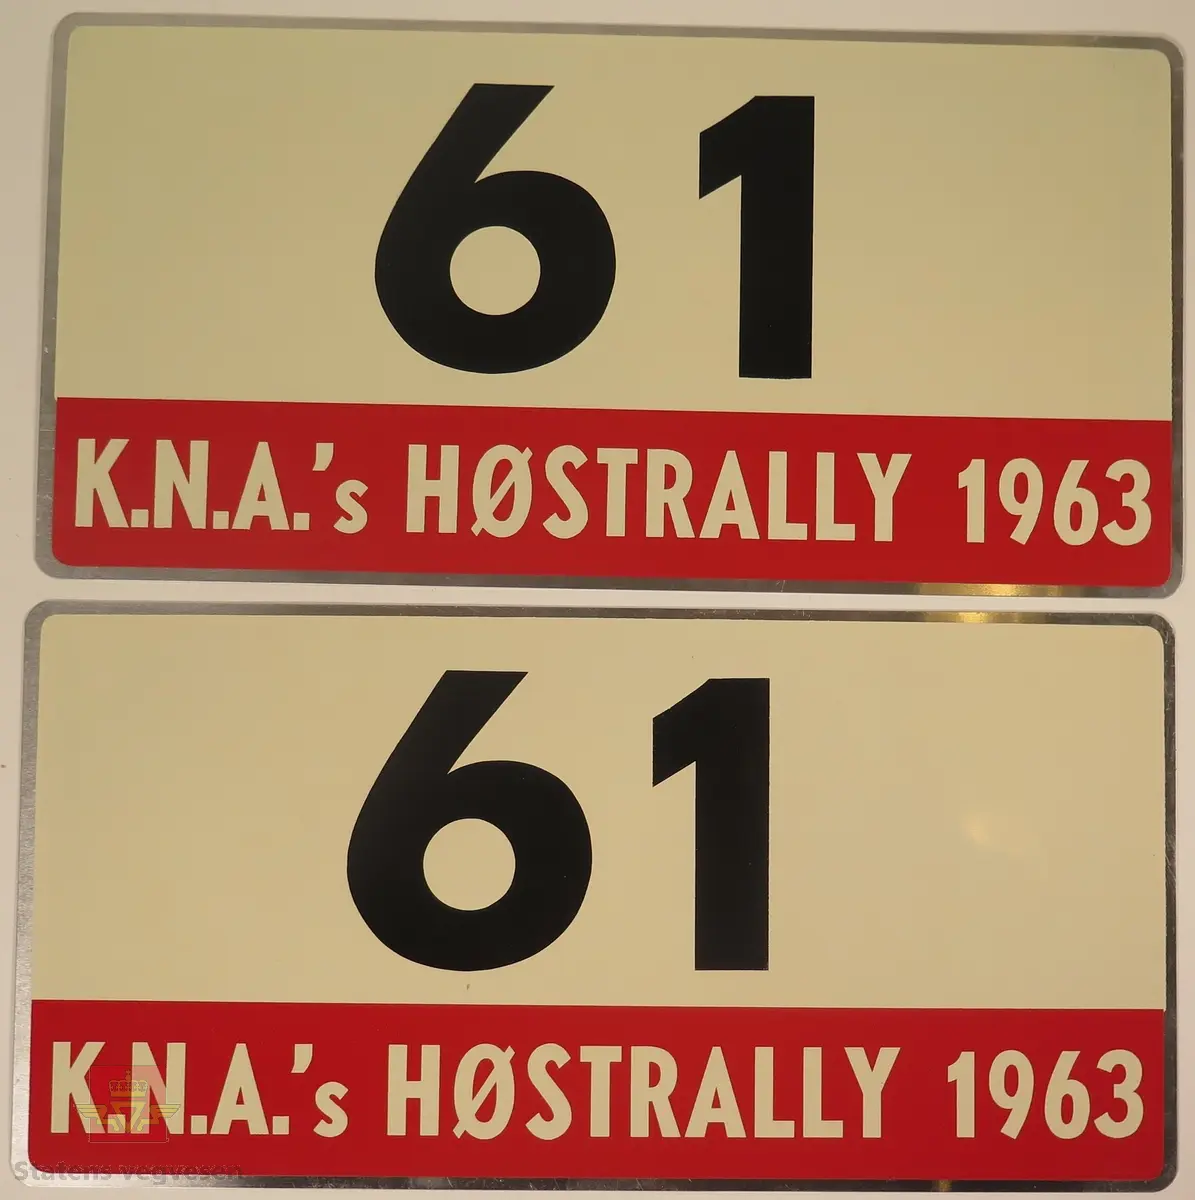 Hovedsakelig hvite metallskilt med et mindre rødt markeringsområde. Grupperingen med skilt har også nummeret "61" påført seg, dette er en indikasjon på deltakernummer.
Påskrift: K.N.A.'s HØSTRALLY 1963